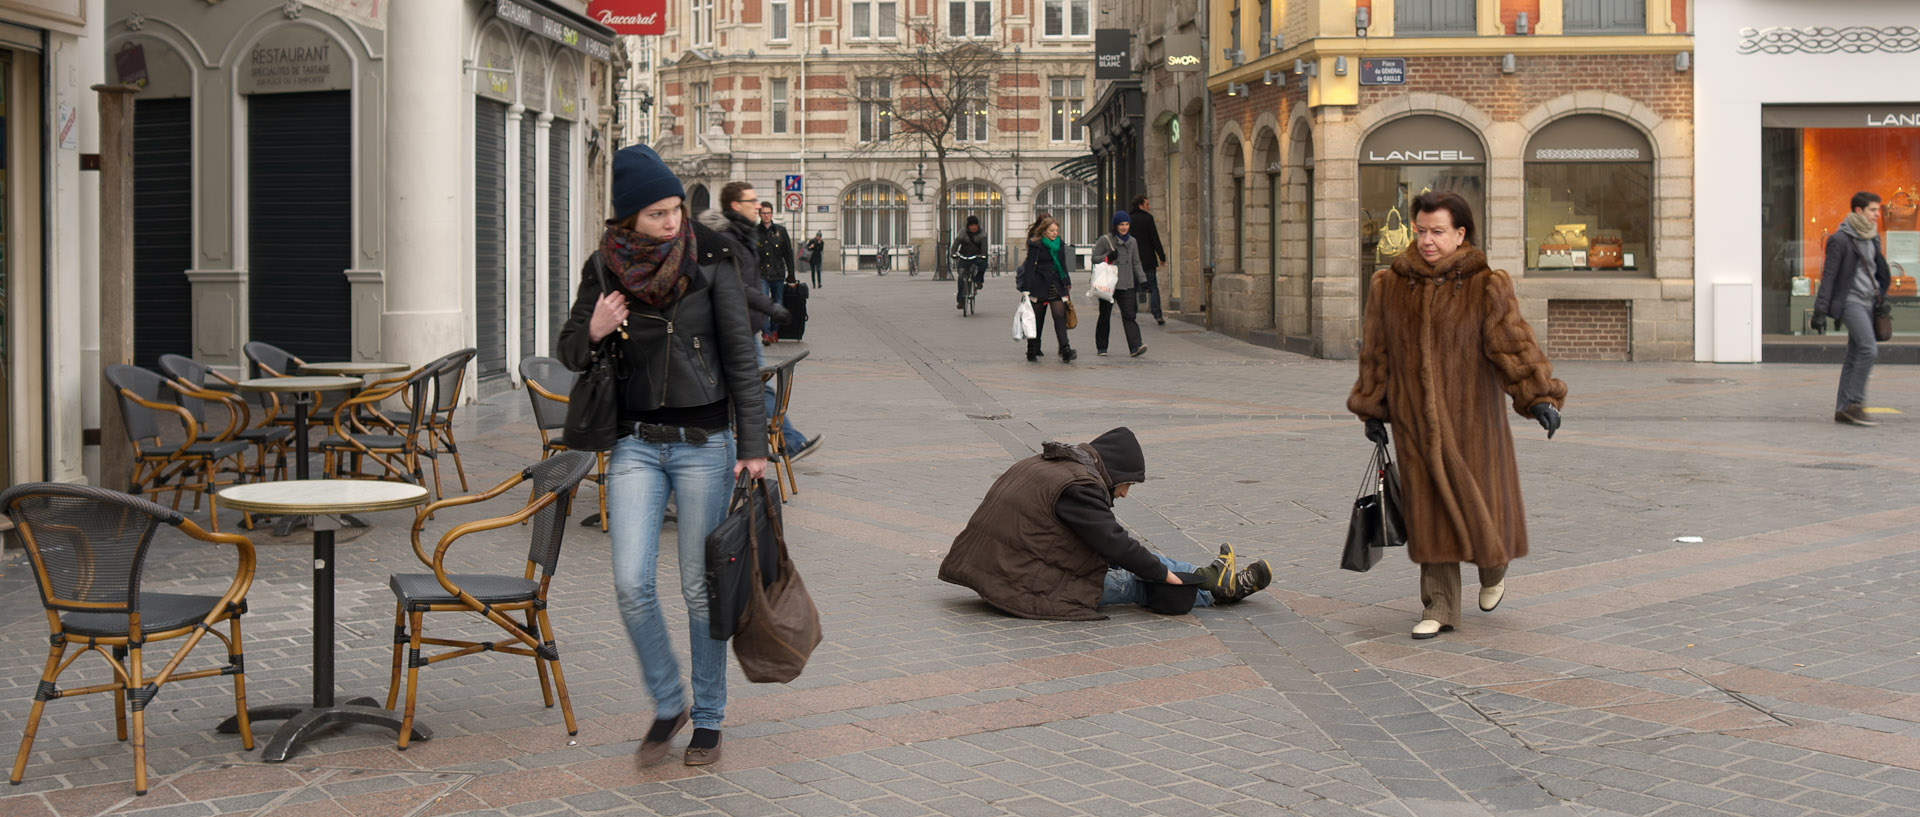 Femme avec un manteau de fourrure passant devant un mendiant, place du Général-de-Gaulle, à Lille.